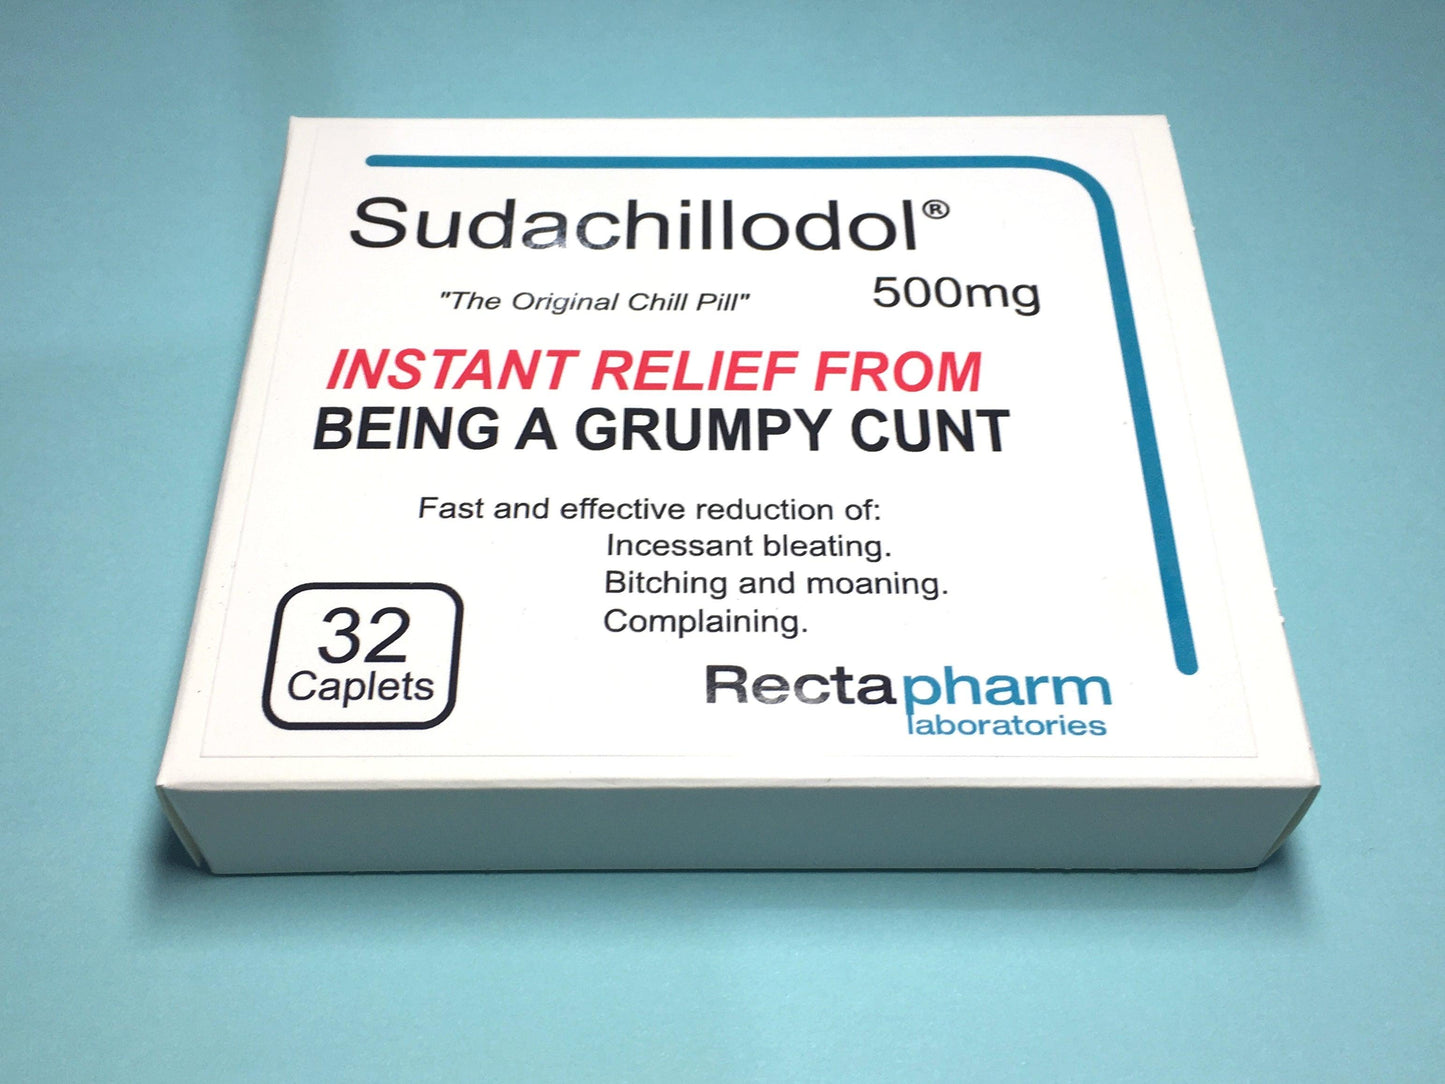 Pill Box - Sudachillodol - Mr. Inappropriate 